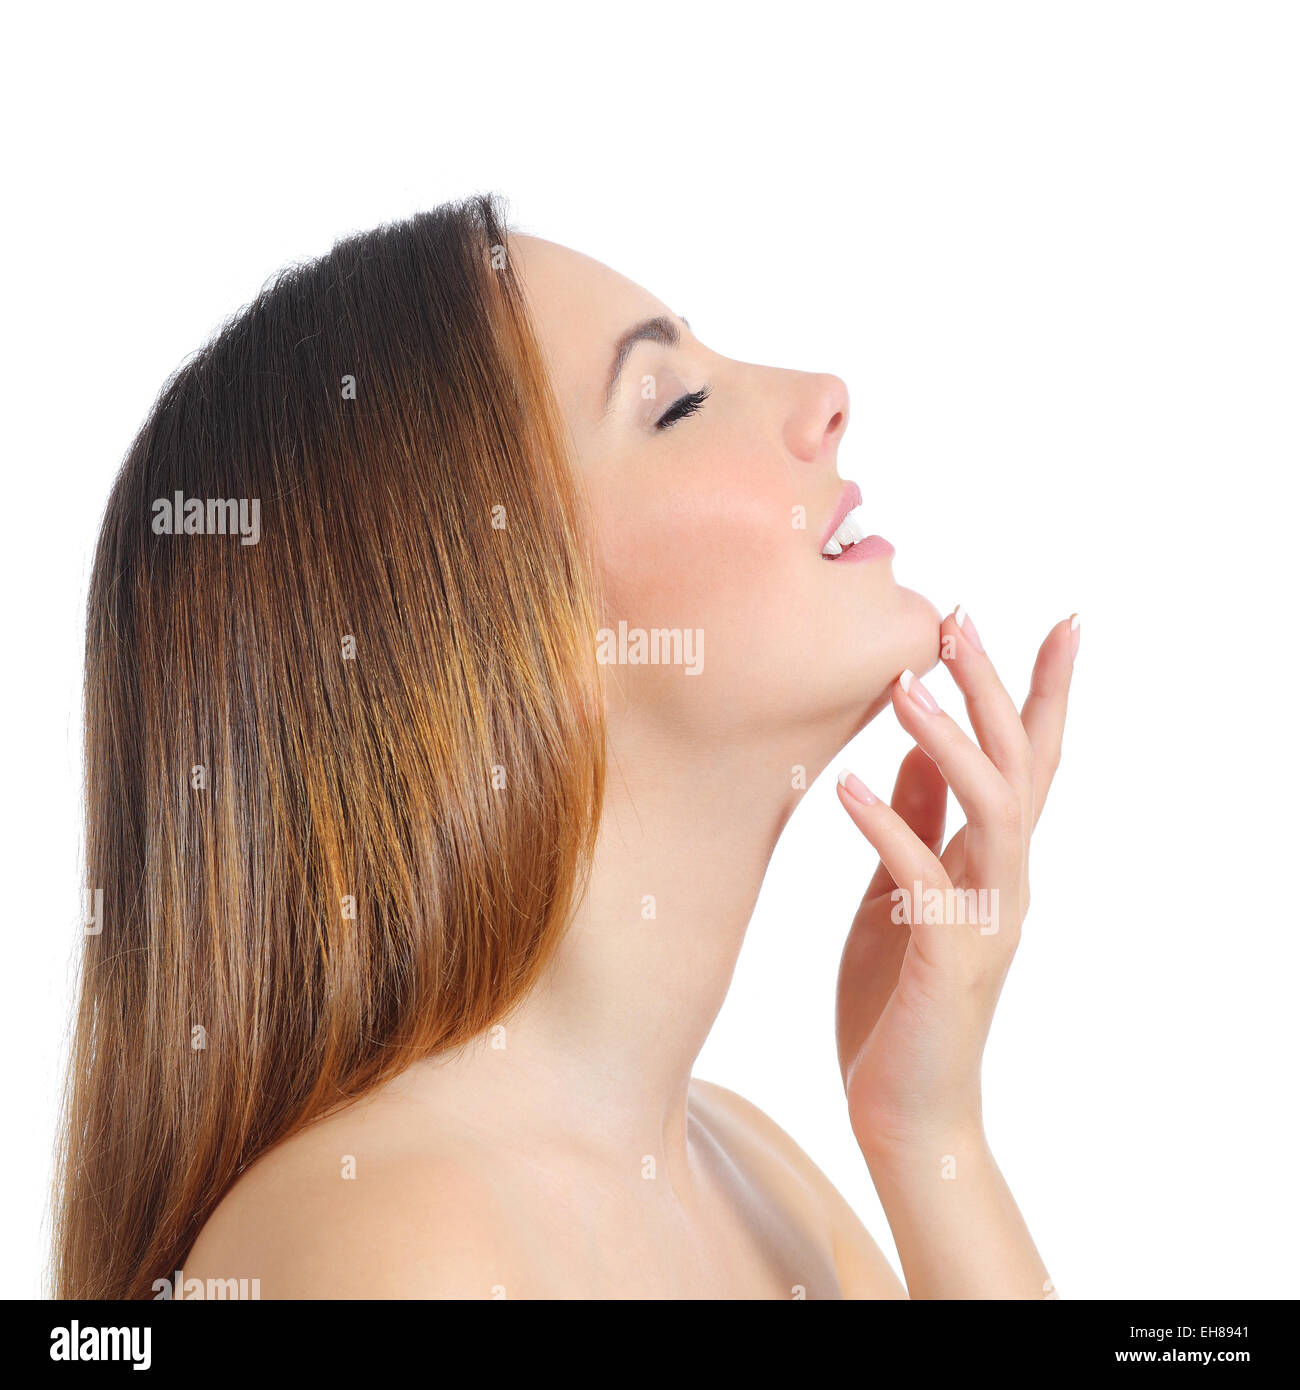 Profil von Schönheit Frau Gesicht Haut und Hand Maniküre isoliert auf weißem Hintergrund Stockfoto